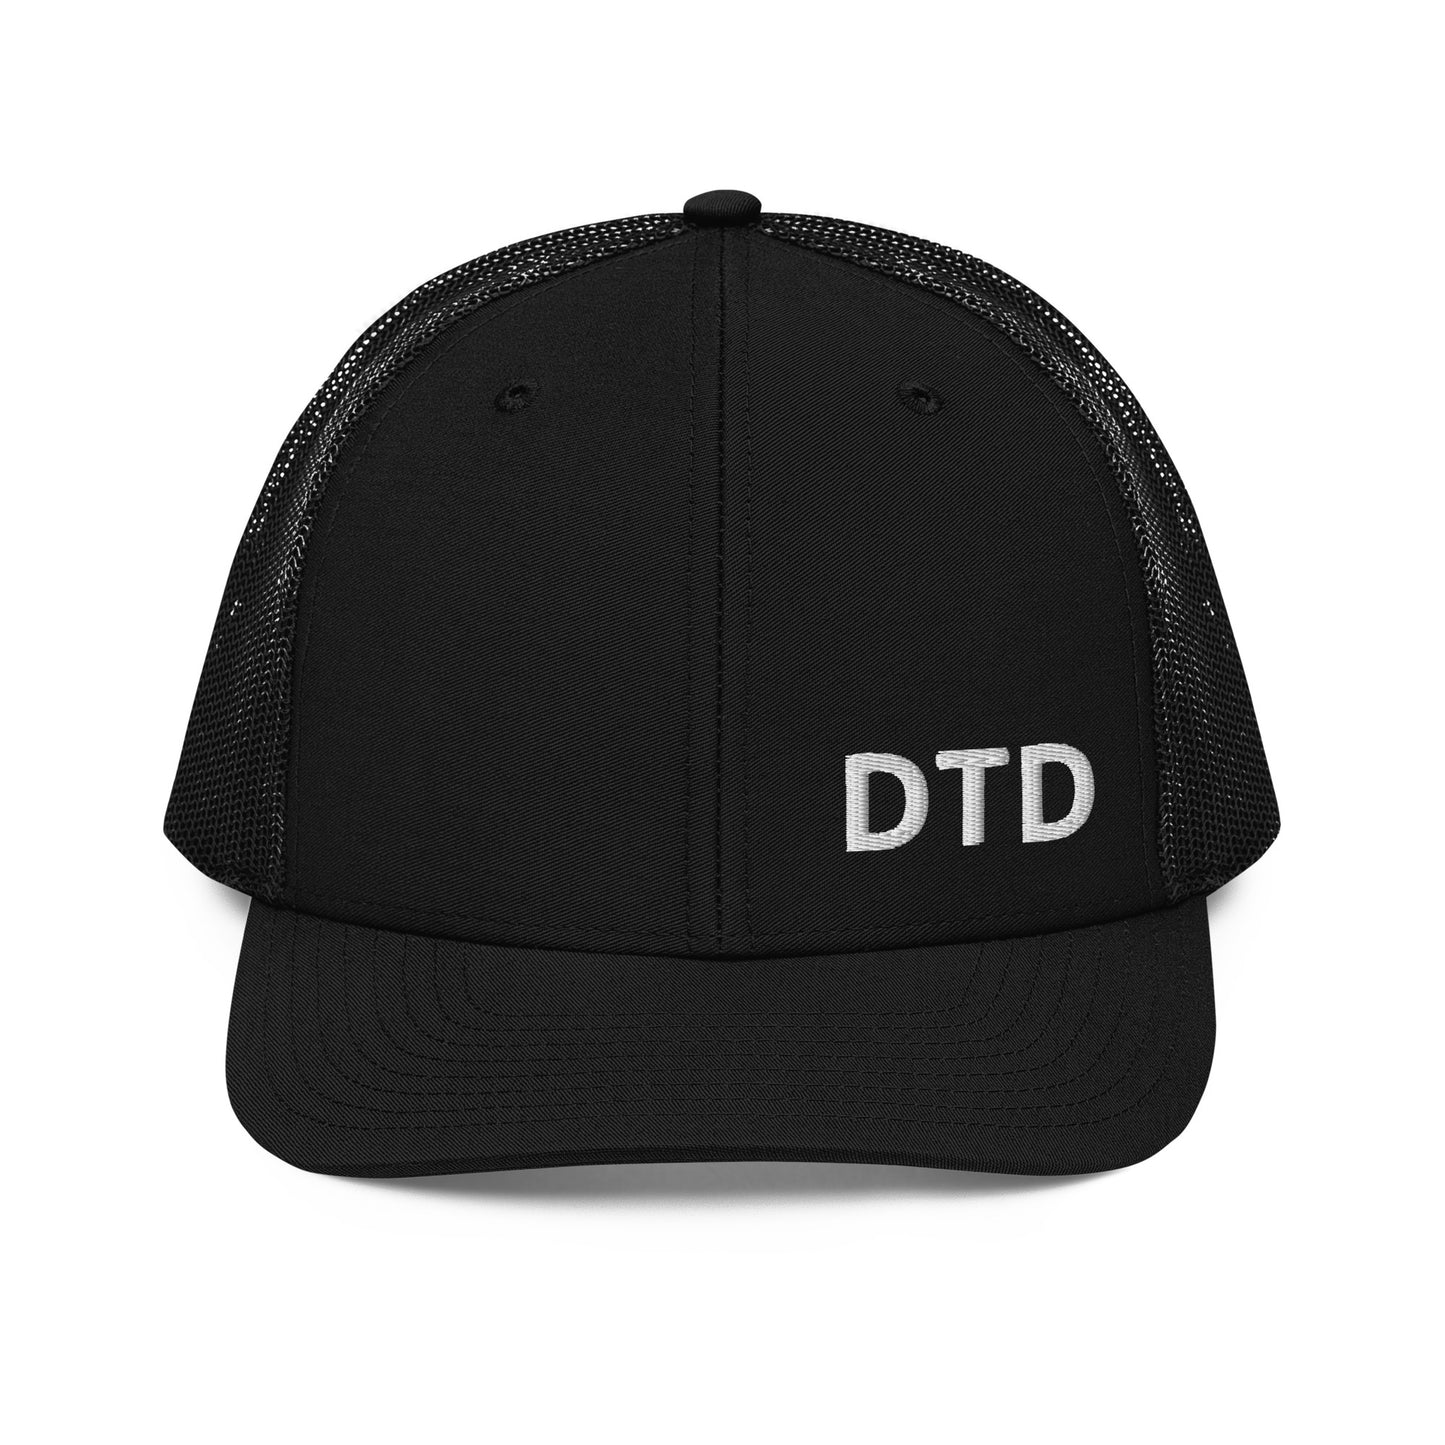 DTD Trucker Cap